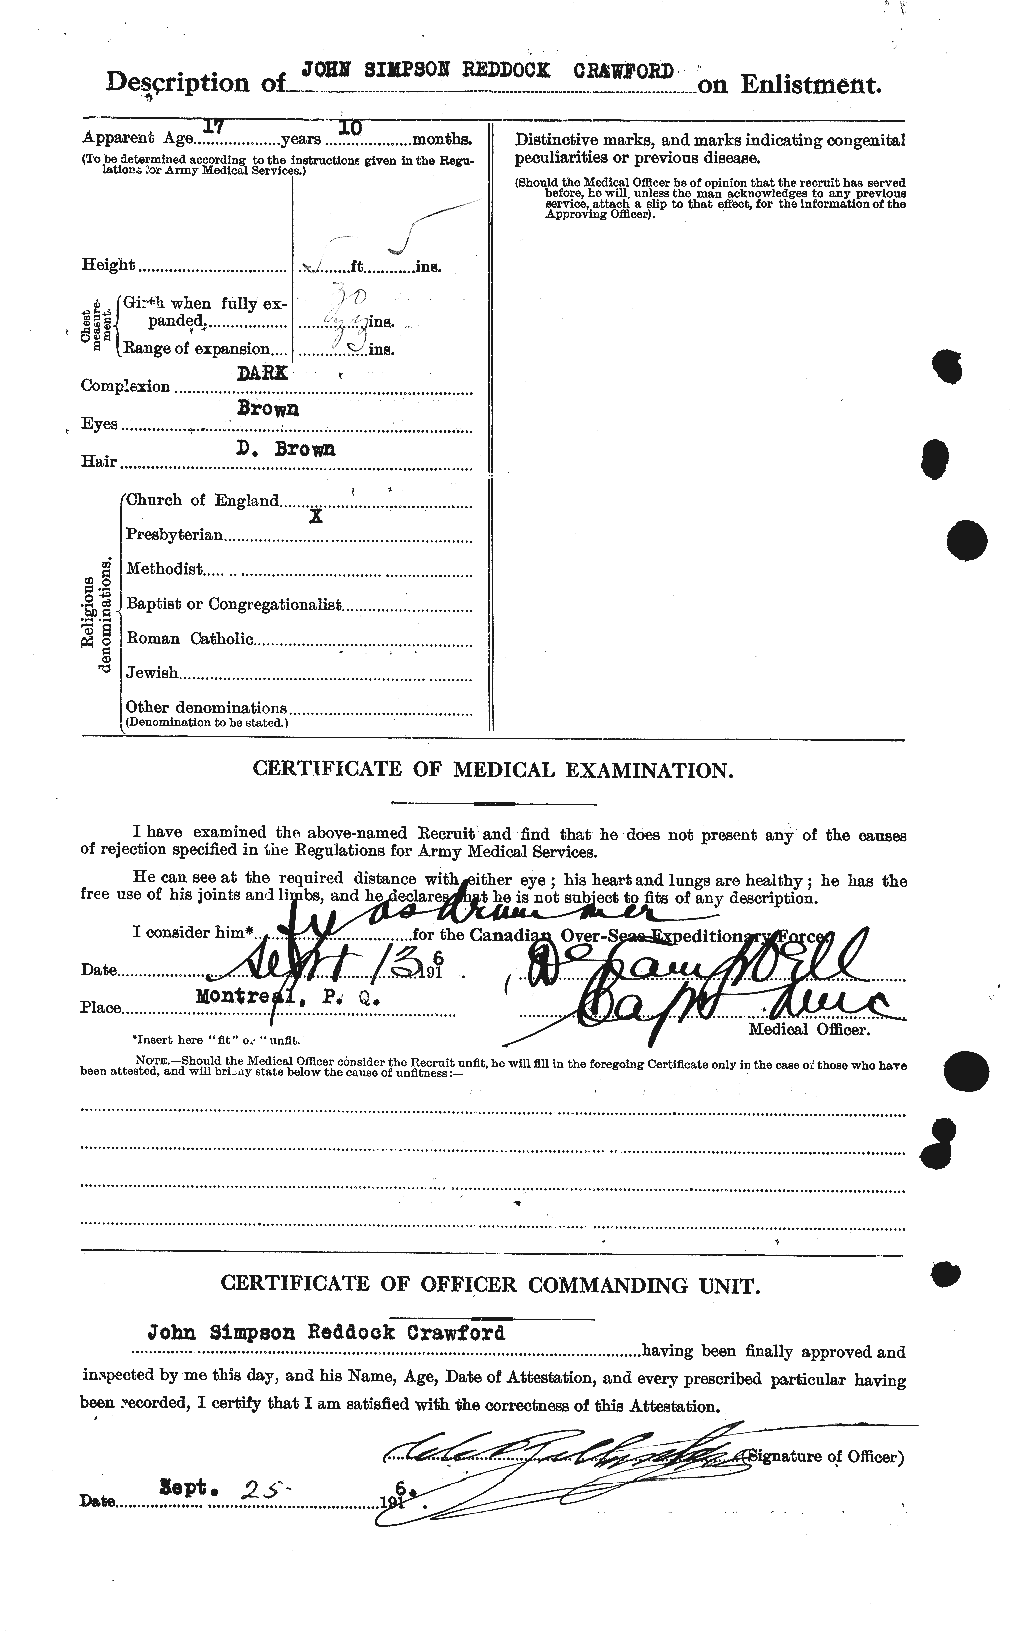 Dossiers du Personnel de la Première Guerre mondiale - CEC 061824b